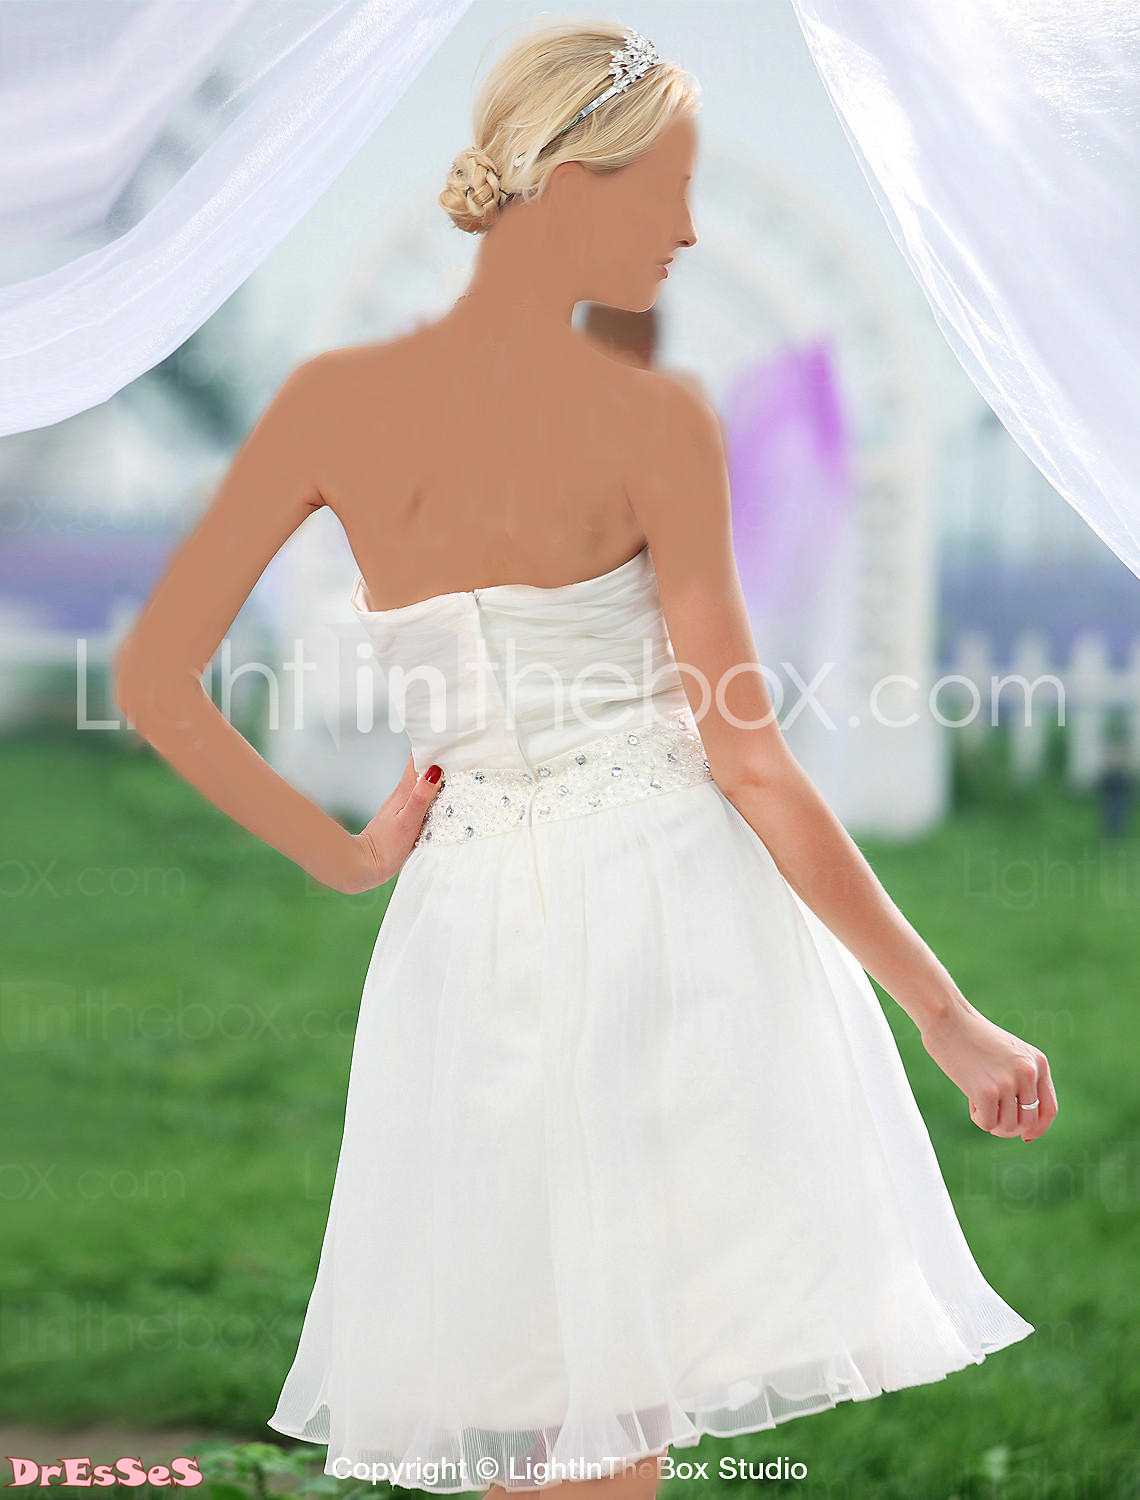 فساتين زفاف للمحجبات نايس للعرايس 2019 , فساتين زفاف للمحجبات خقق 2019